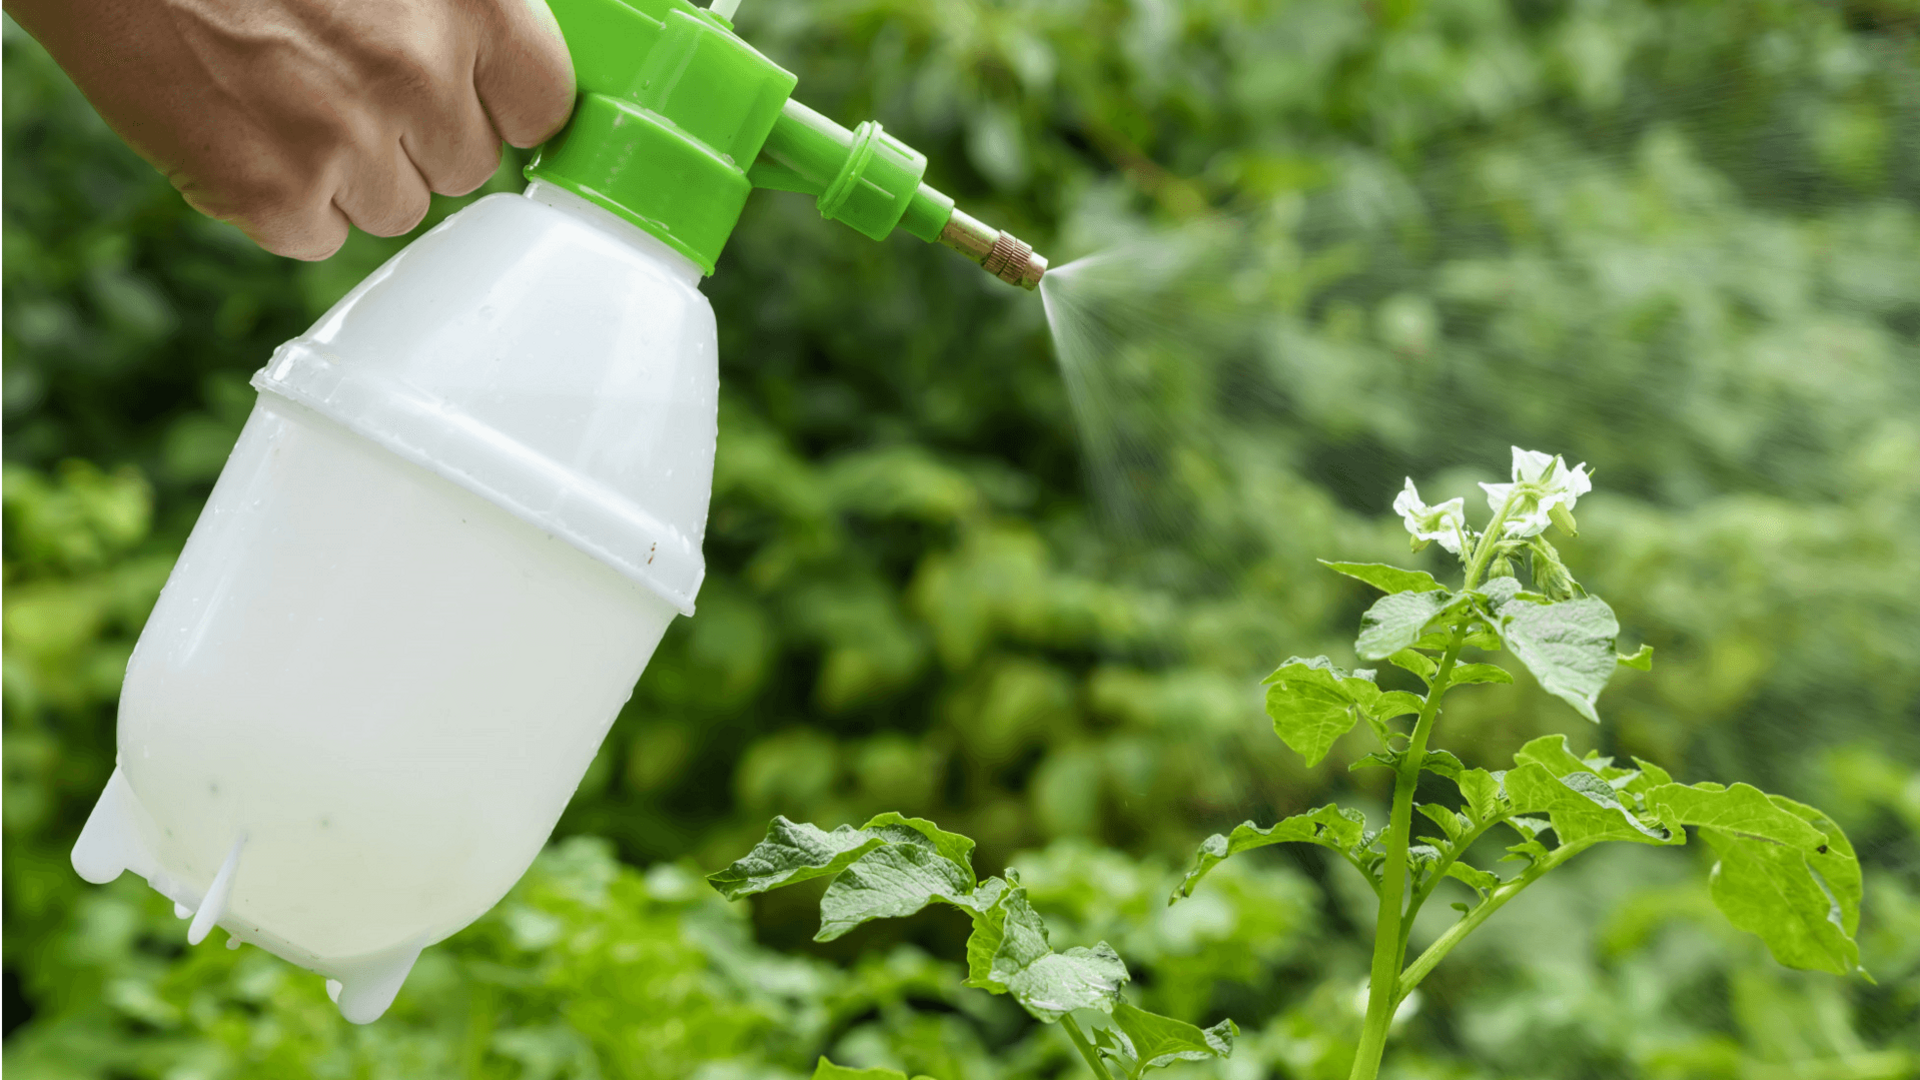 Begini cara membuat insektisida di rumah untuk melindungi tanaman Anda